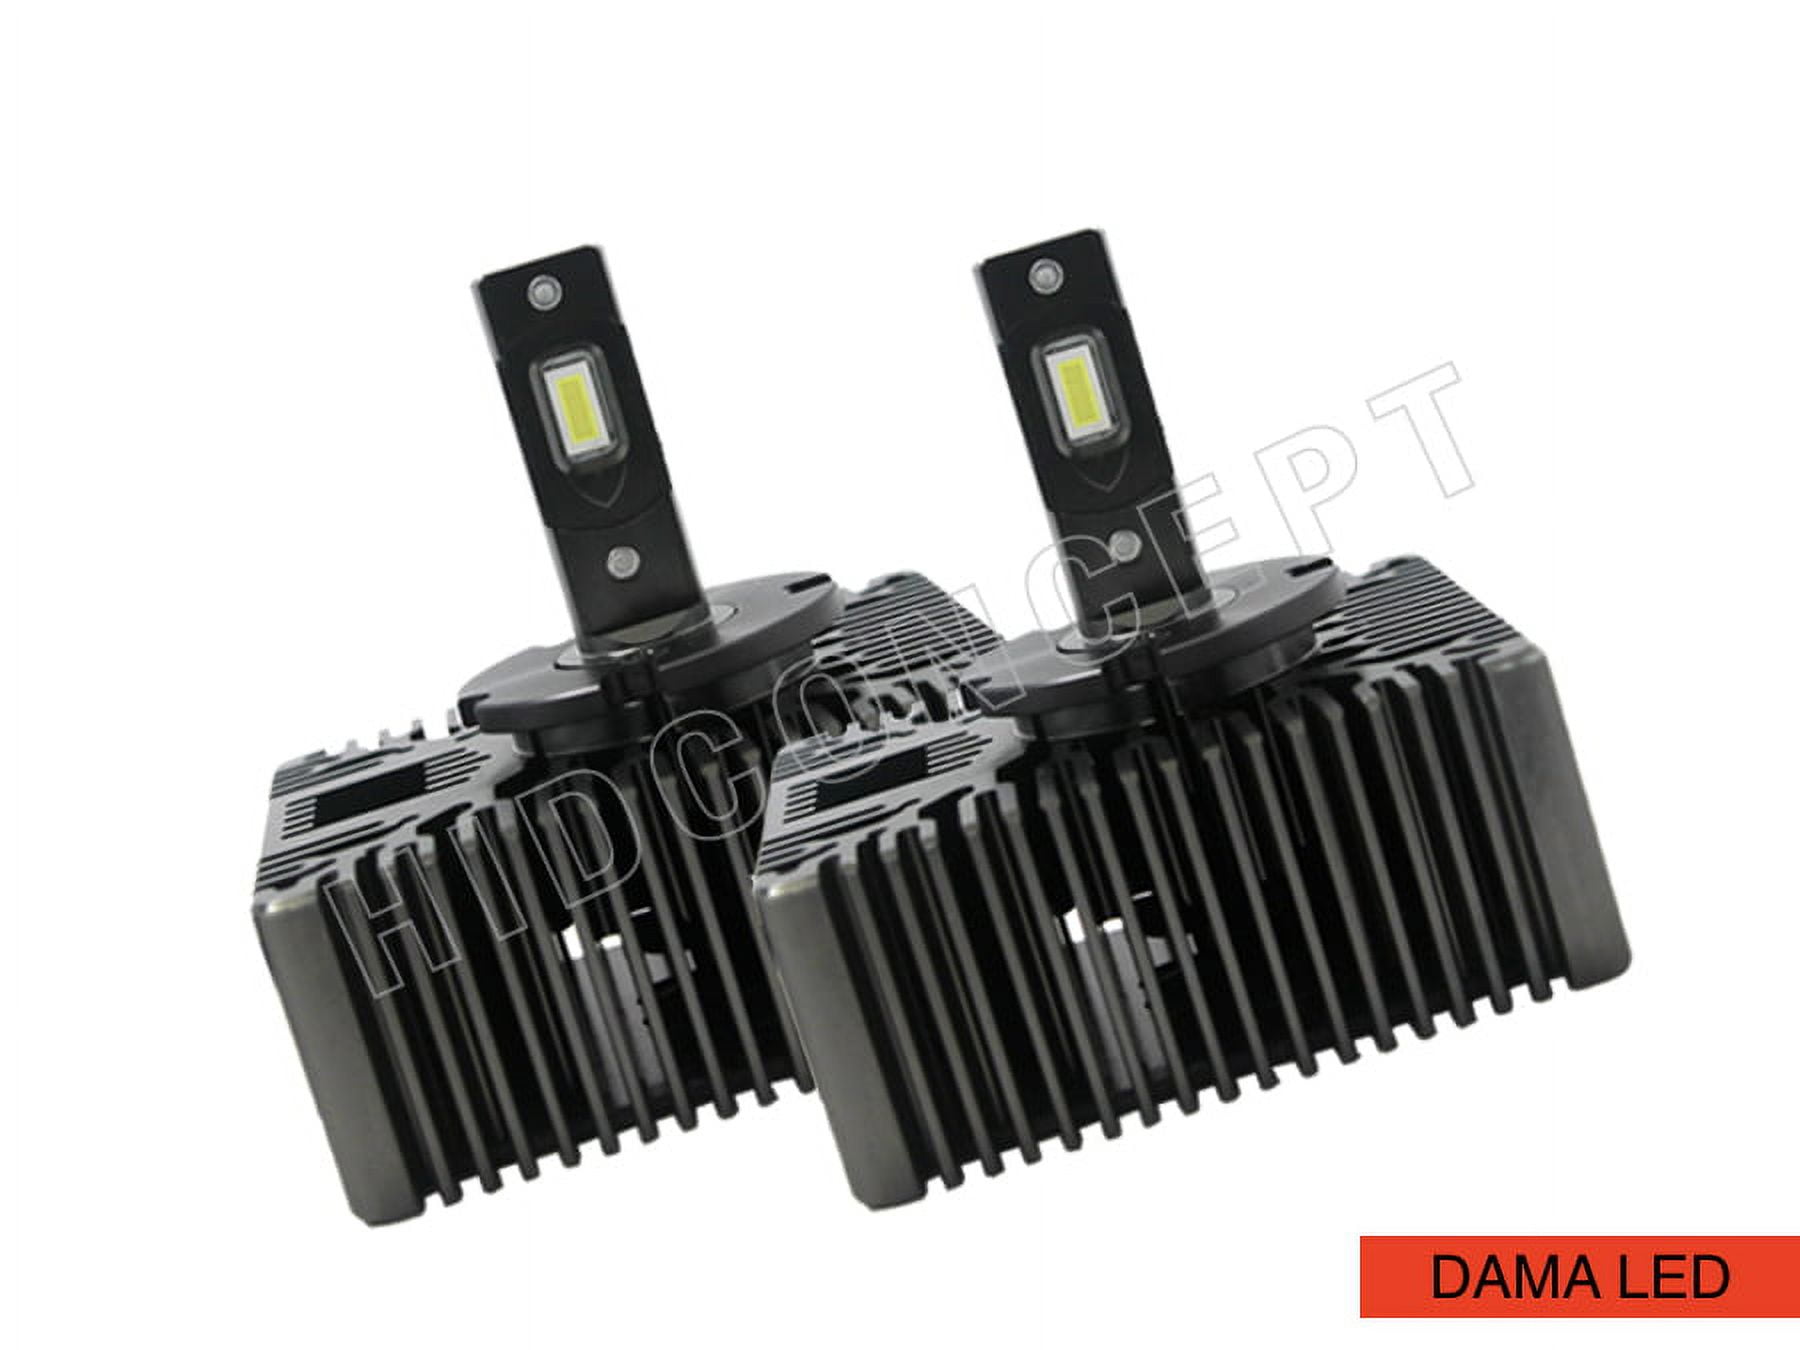 D5S - DAMA 6000K KUV (Kanji Ultimate Vision) LED Headlight Bulbs | Pack of 2